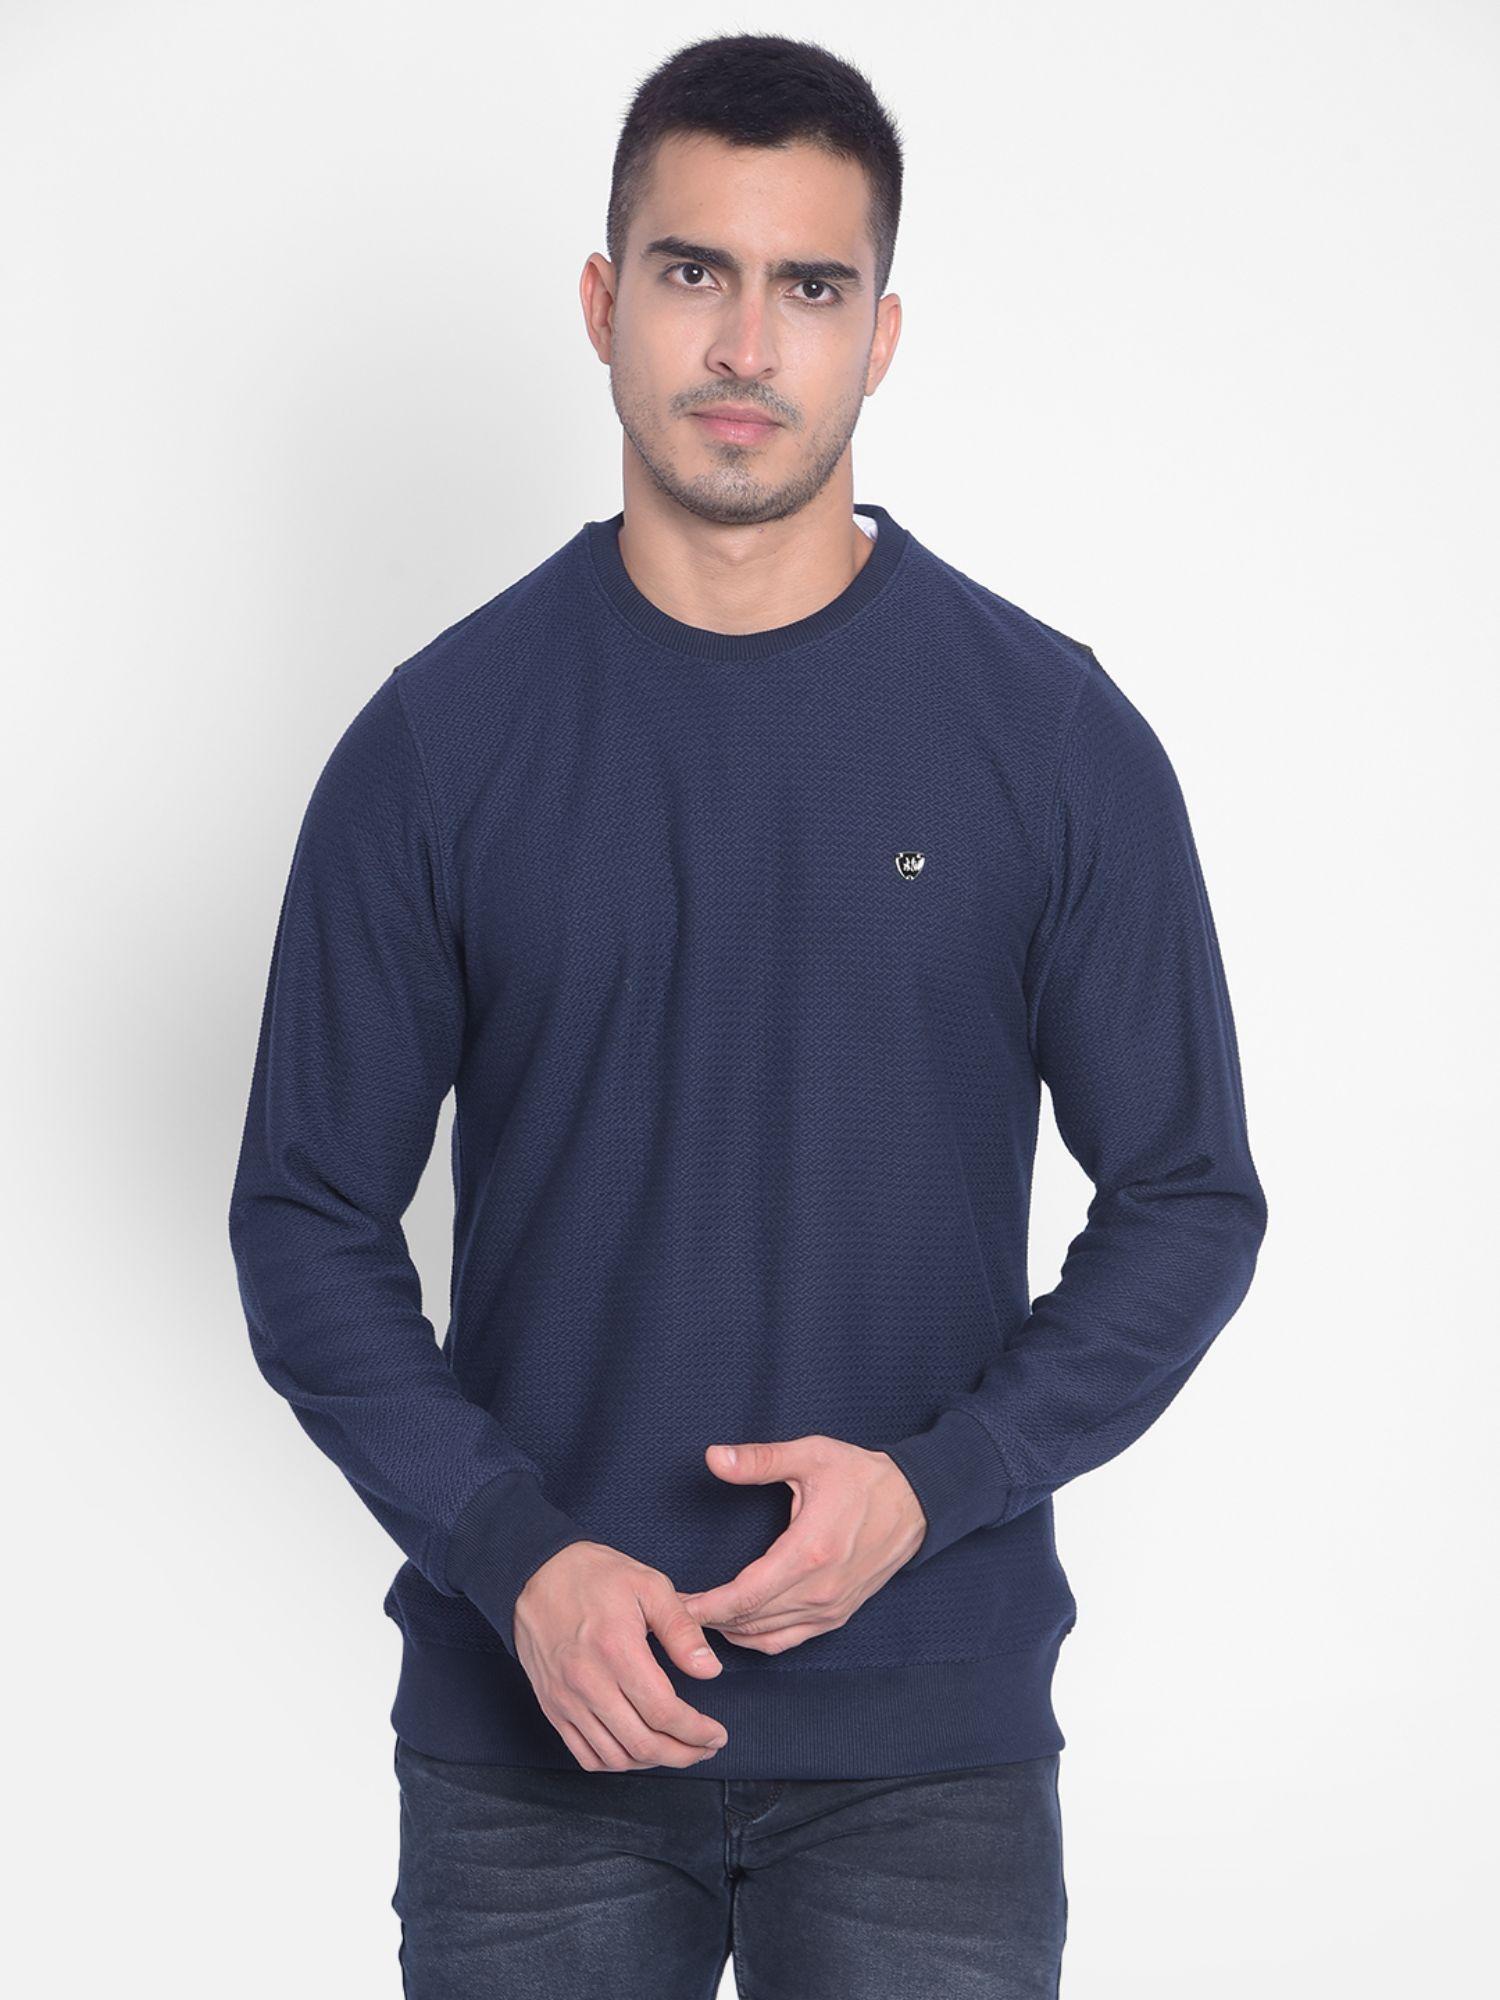 men's navy blue sweatshirt